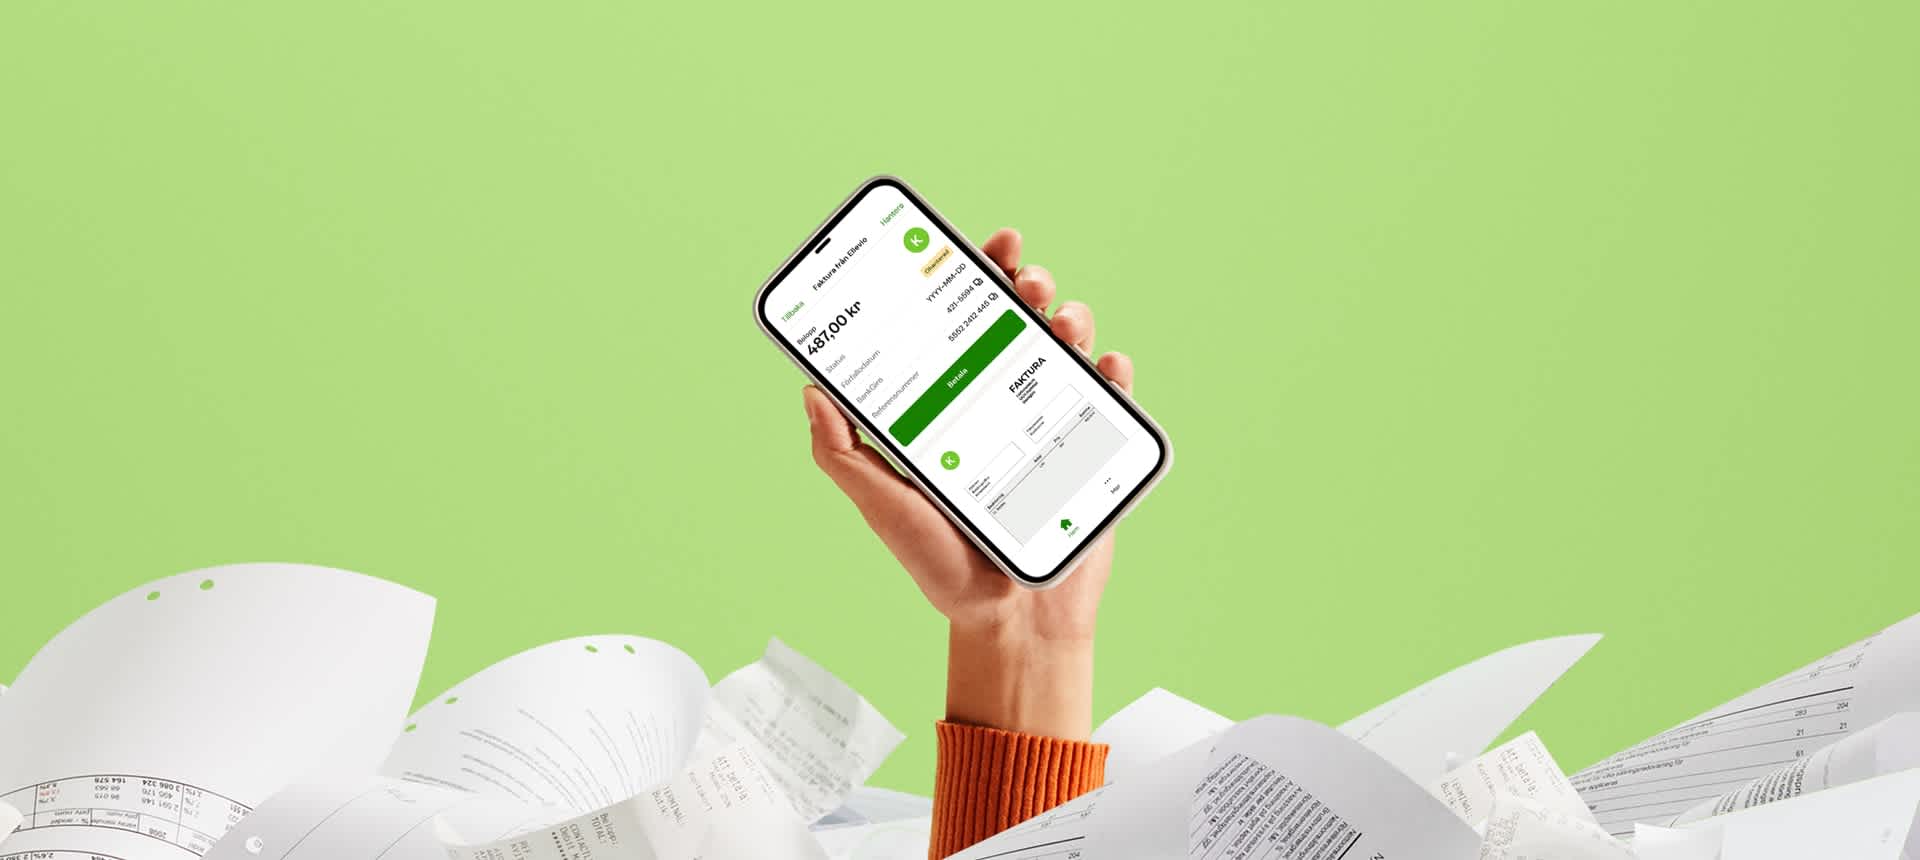 En hand som håller i en mobiltelefon med en faktura i Kivras app på skärmen.